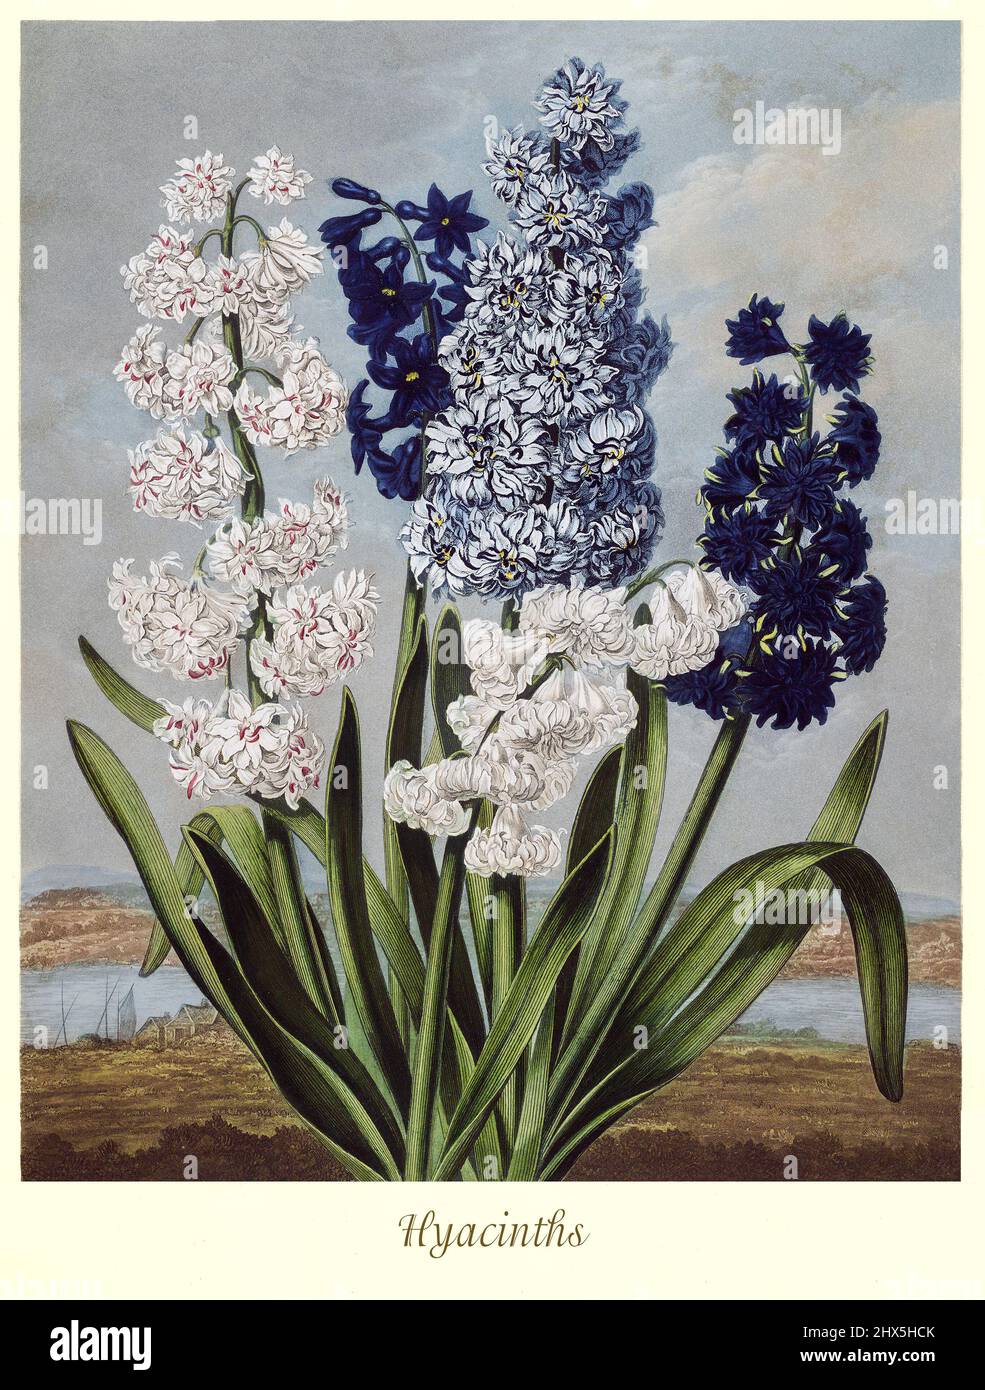 Illustration des hyacinthes du genre jacinthus et de la famille des asperges au début du siècle 19th. Les plantes vivaces bulbeuses, florissantes au printemps, sont des plantes à fleurs odorantes de la famille des Asparagaceae, sous-famille originaire de la région de la Méditerranée orientale, du sud de la Turquie jusqu'à la partie nord d'Israël. Cette œuvre de Robert John Thornton 'le Temple de Flora' en 1807, a été imprimée, pour l'éditeur, par T. Bensley, Londres, Angleterre. Banque D'Images